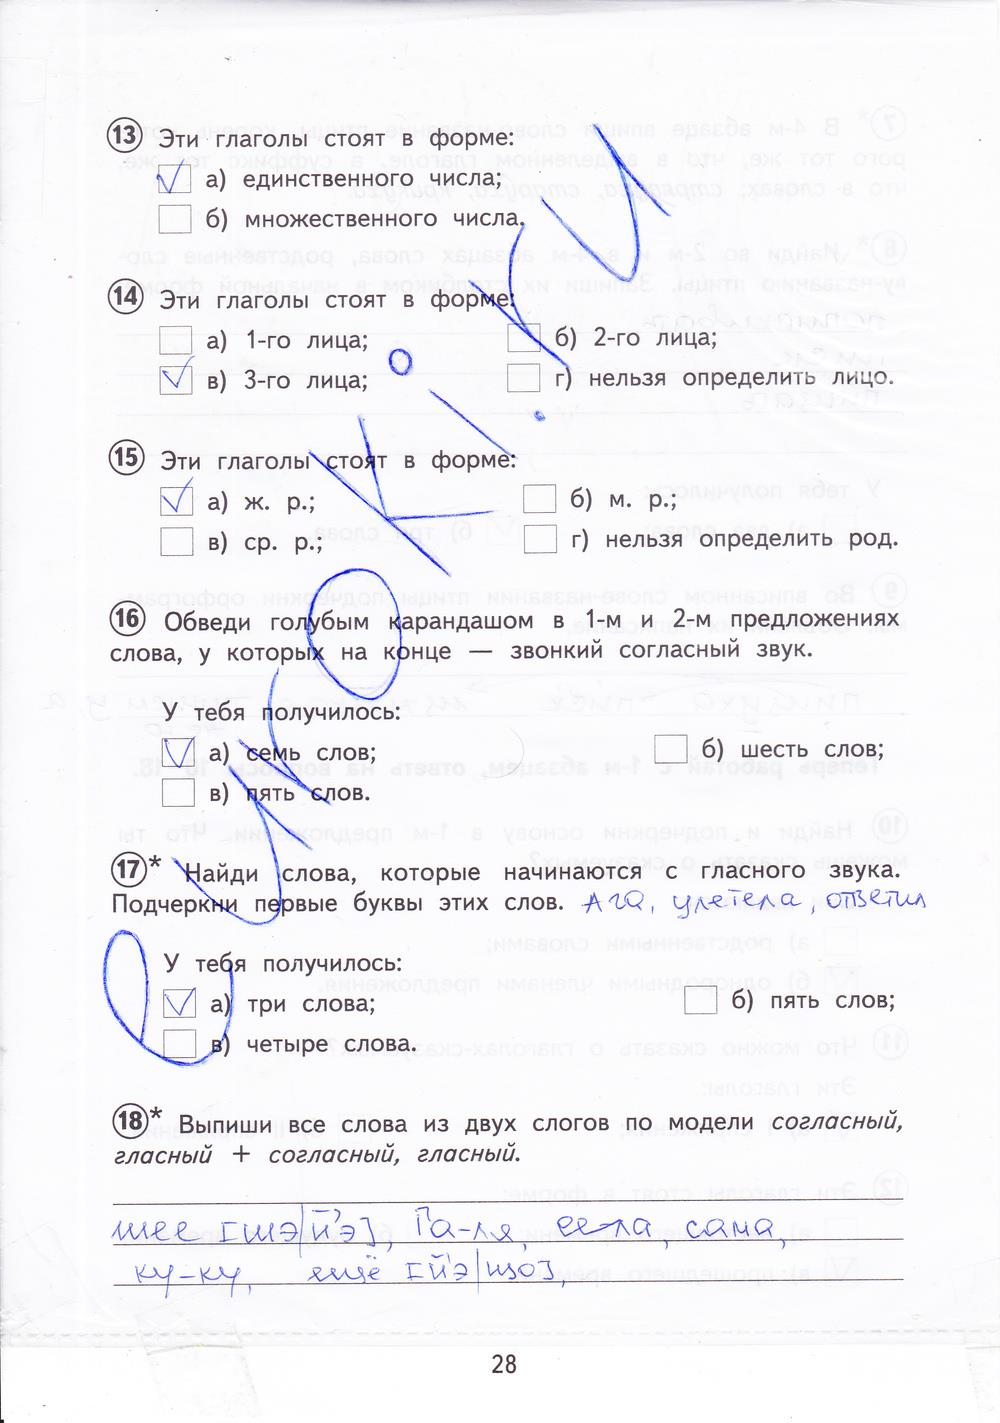 гдз 4 класс тетрадь для проверочных работ страница 28 русский язык Лаврова